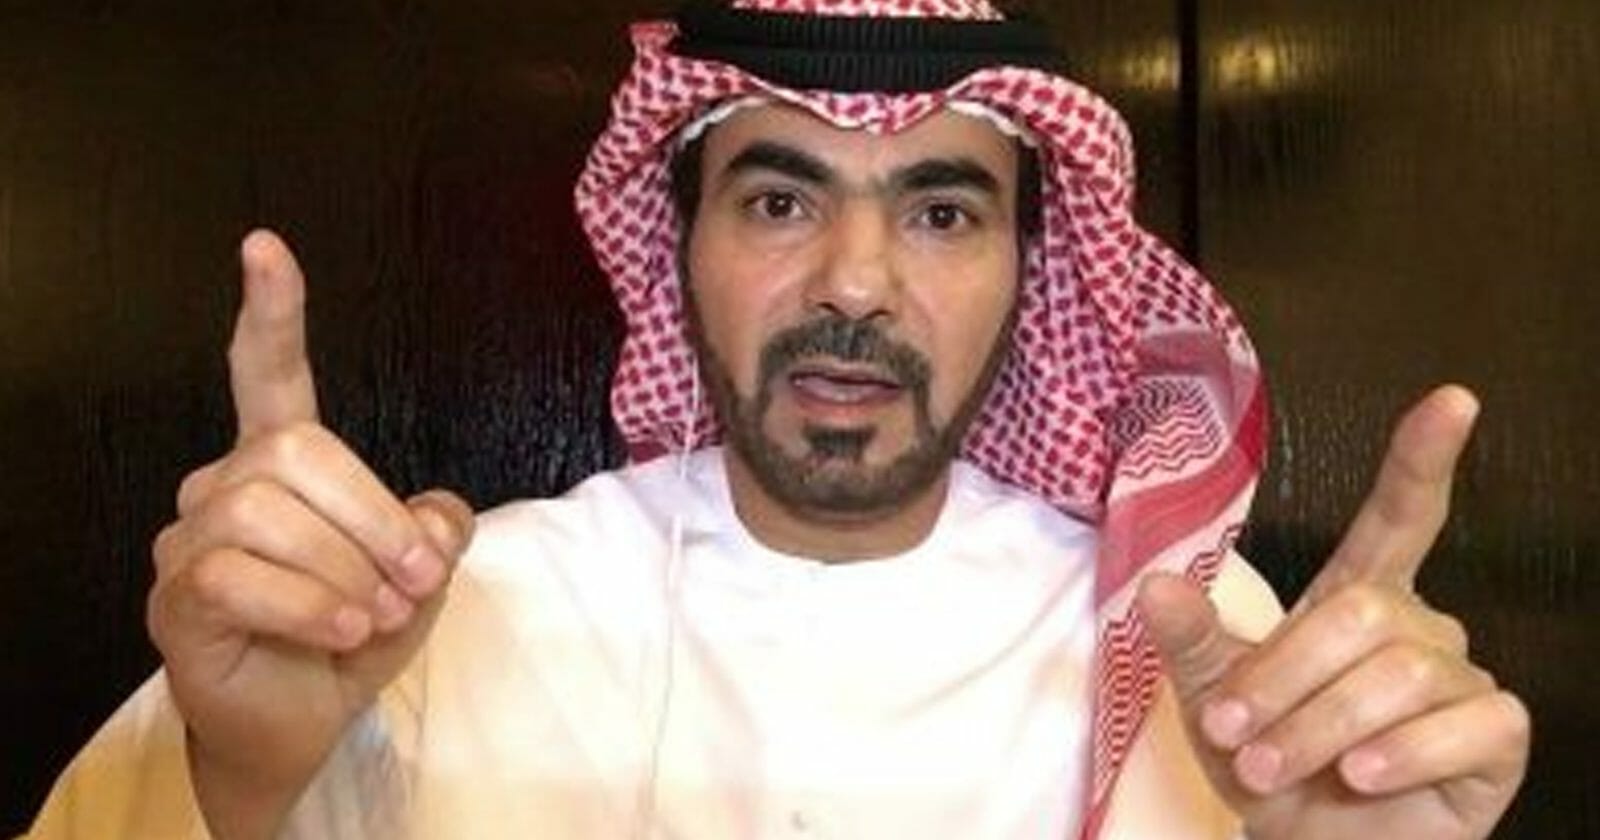 رعد شلال يلمح لدور الإمارات وراء مؤتمر أربيل watanserb.com